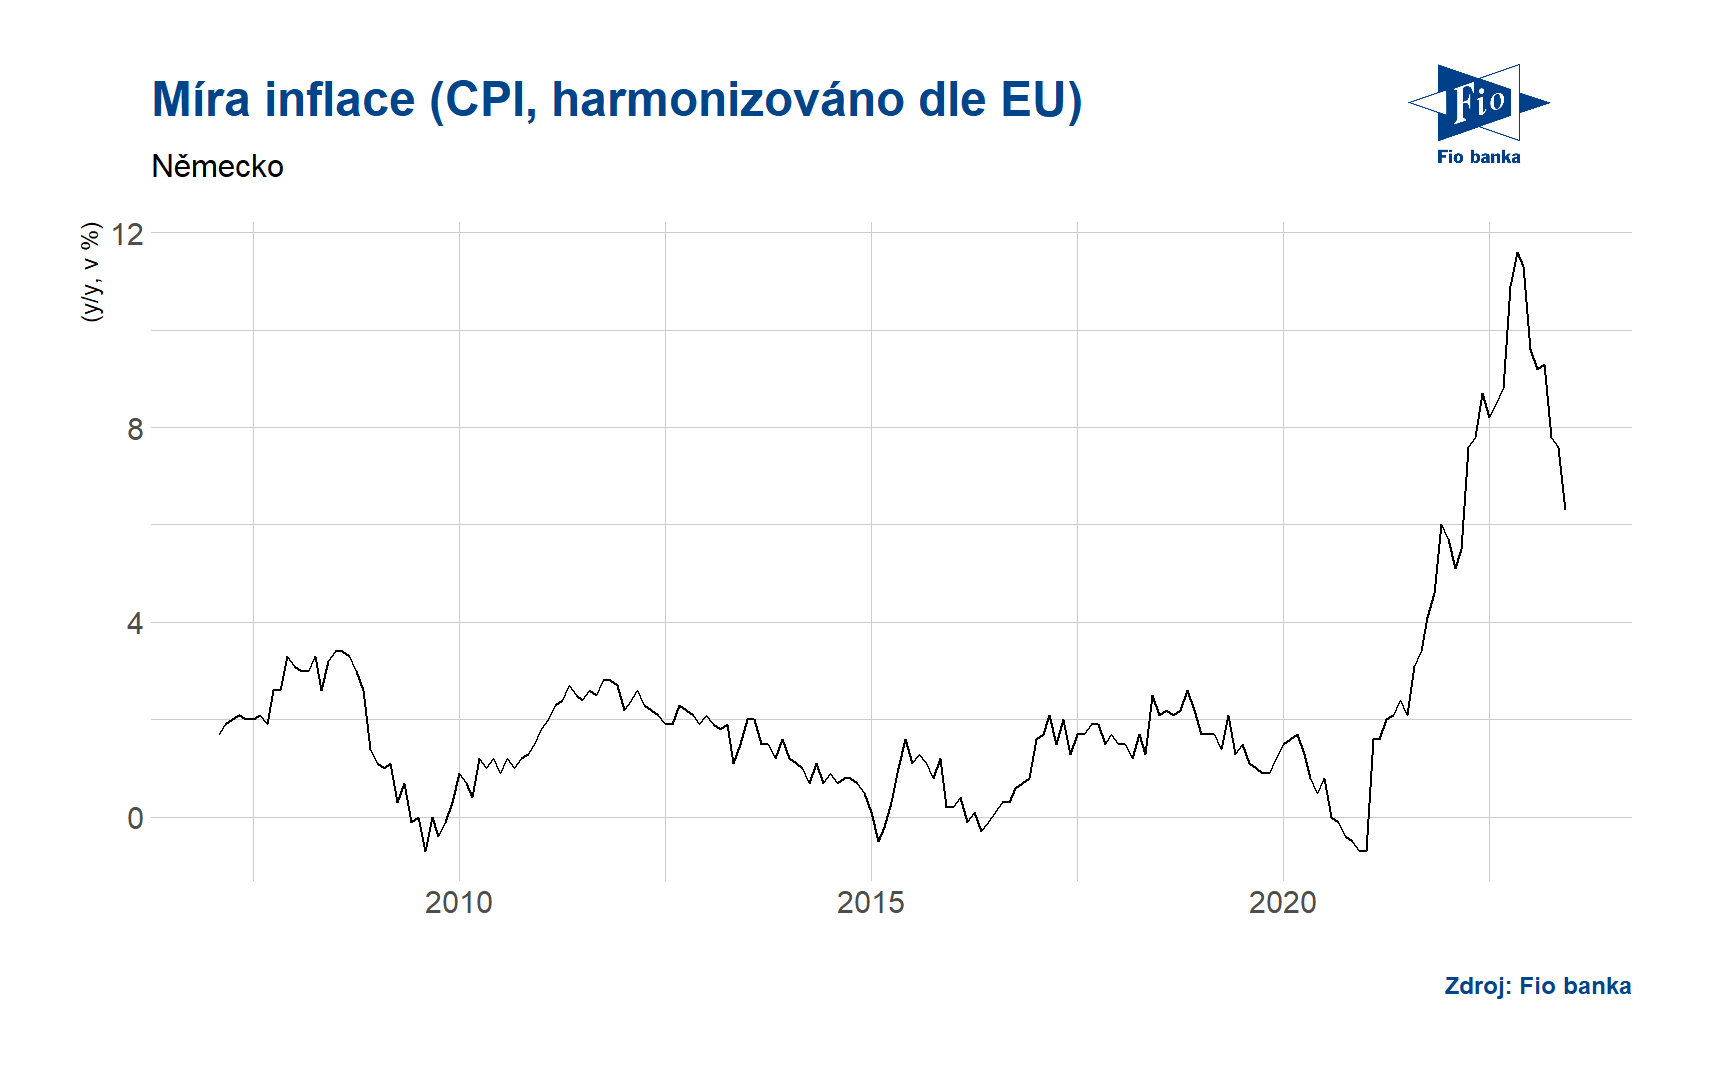 Míra inflace dle CPI - Německo